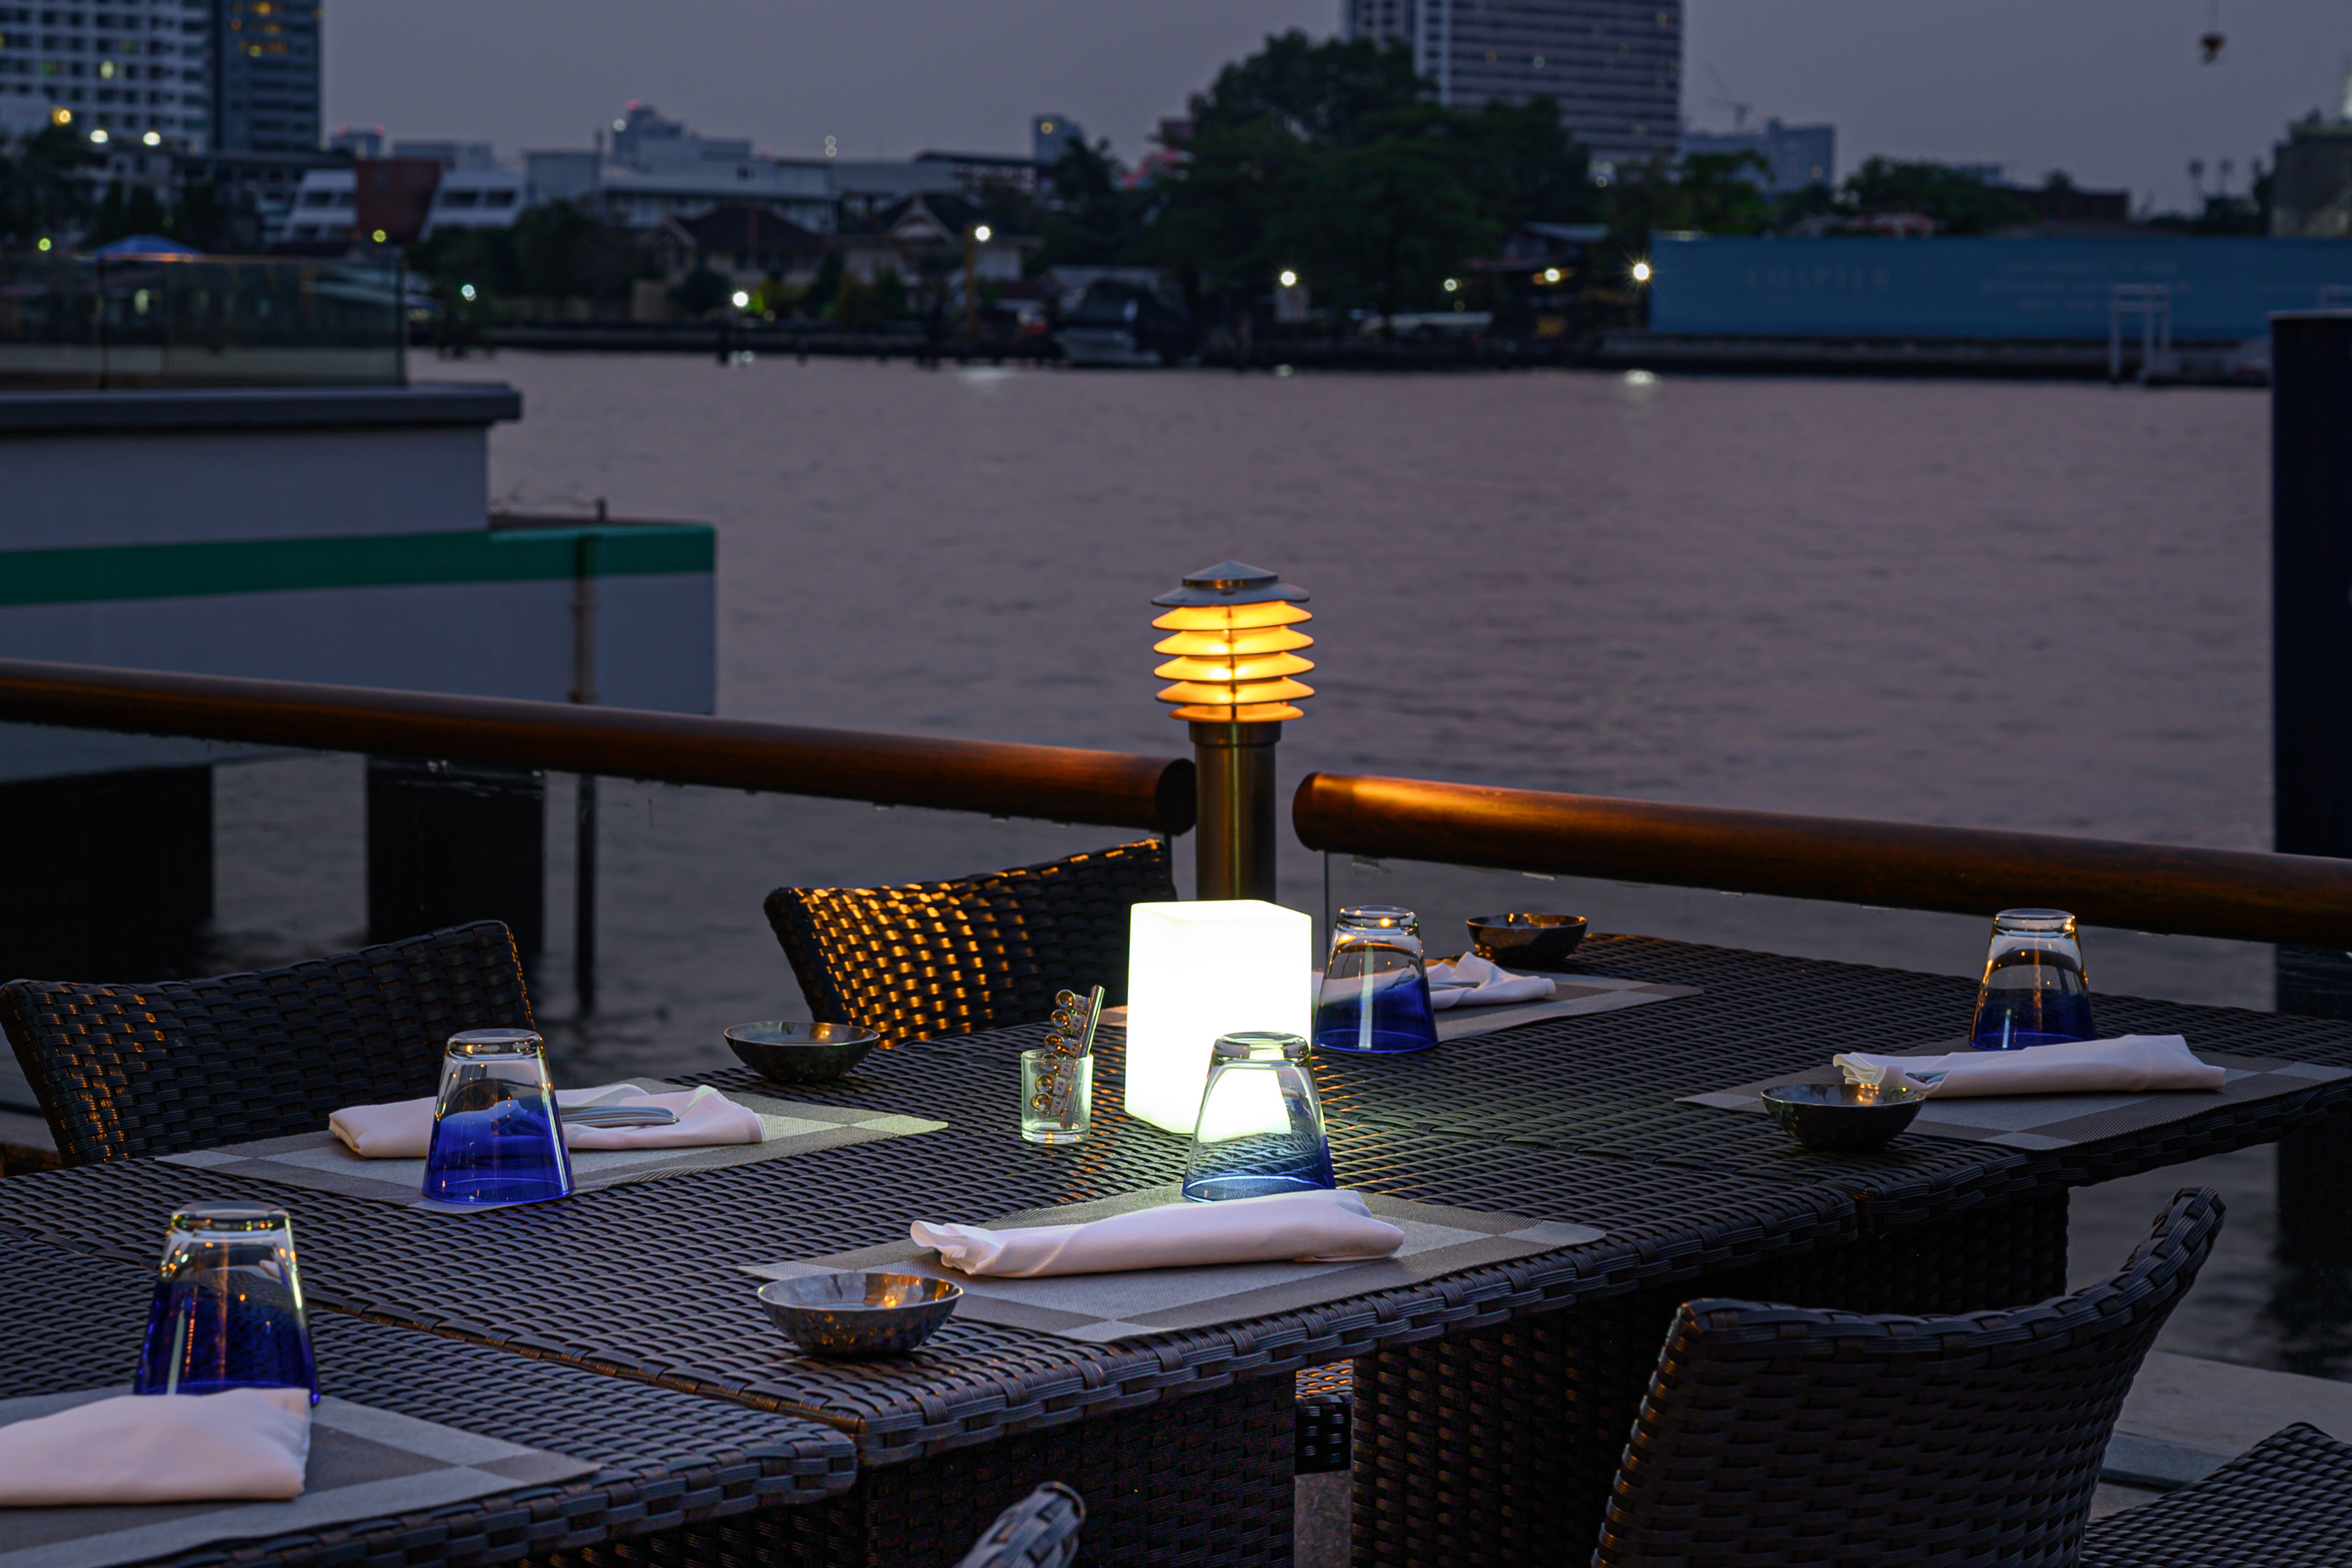 曼谷河畔察殿河濱酒店自助餐